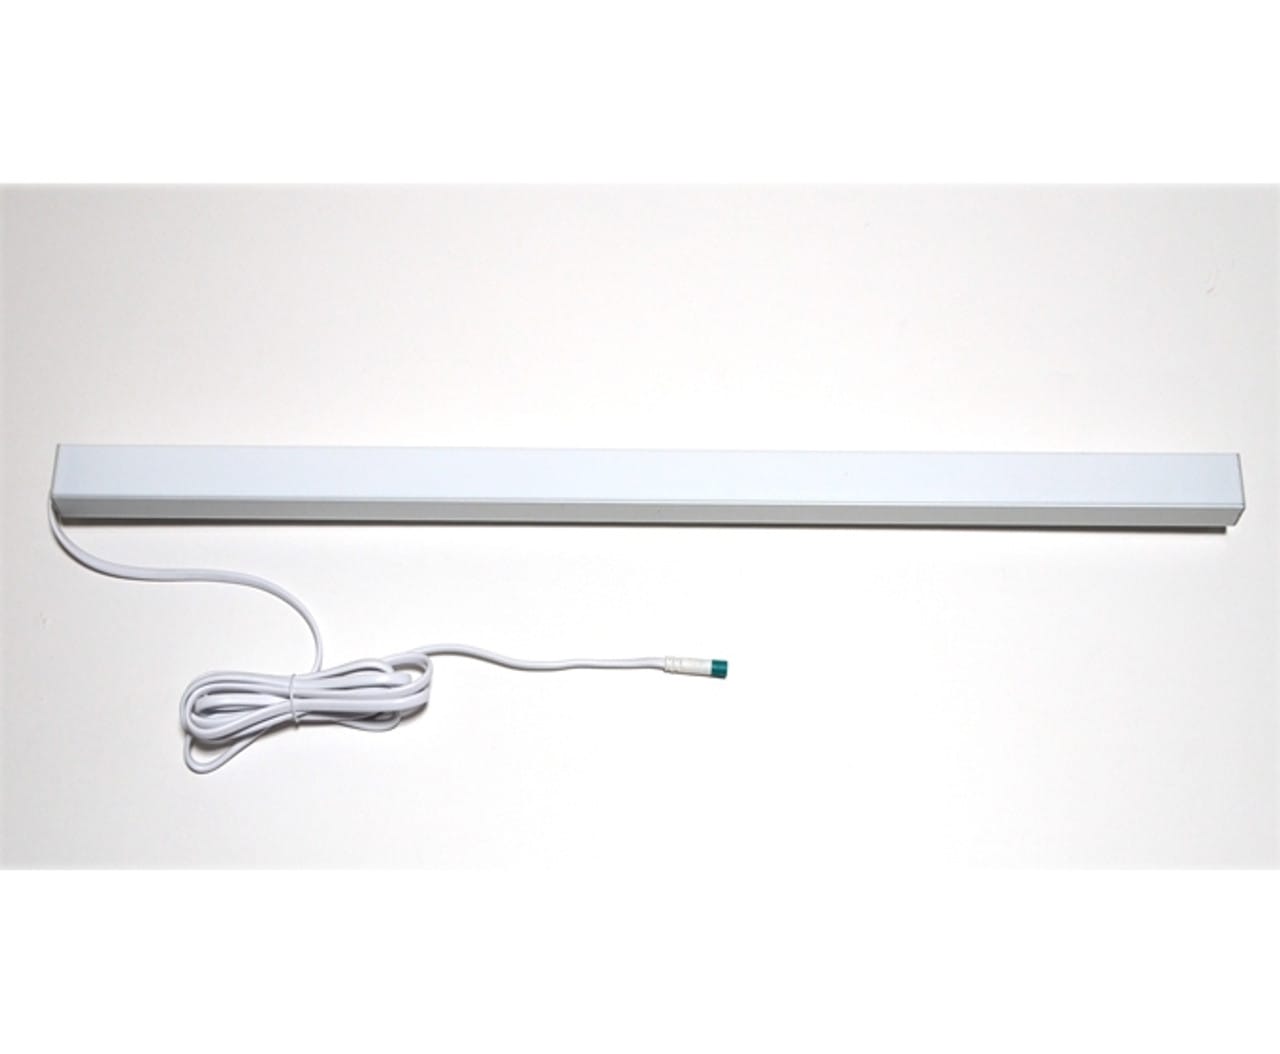 2-Pack) Hubbell Lighting 20721697 LED Light Board Bar 22 Strip